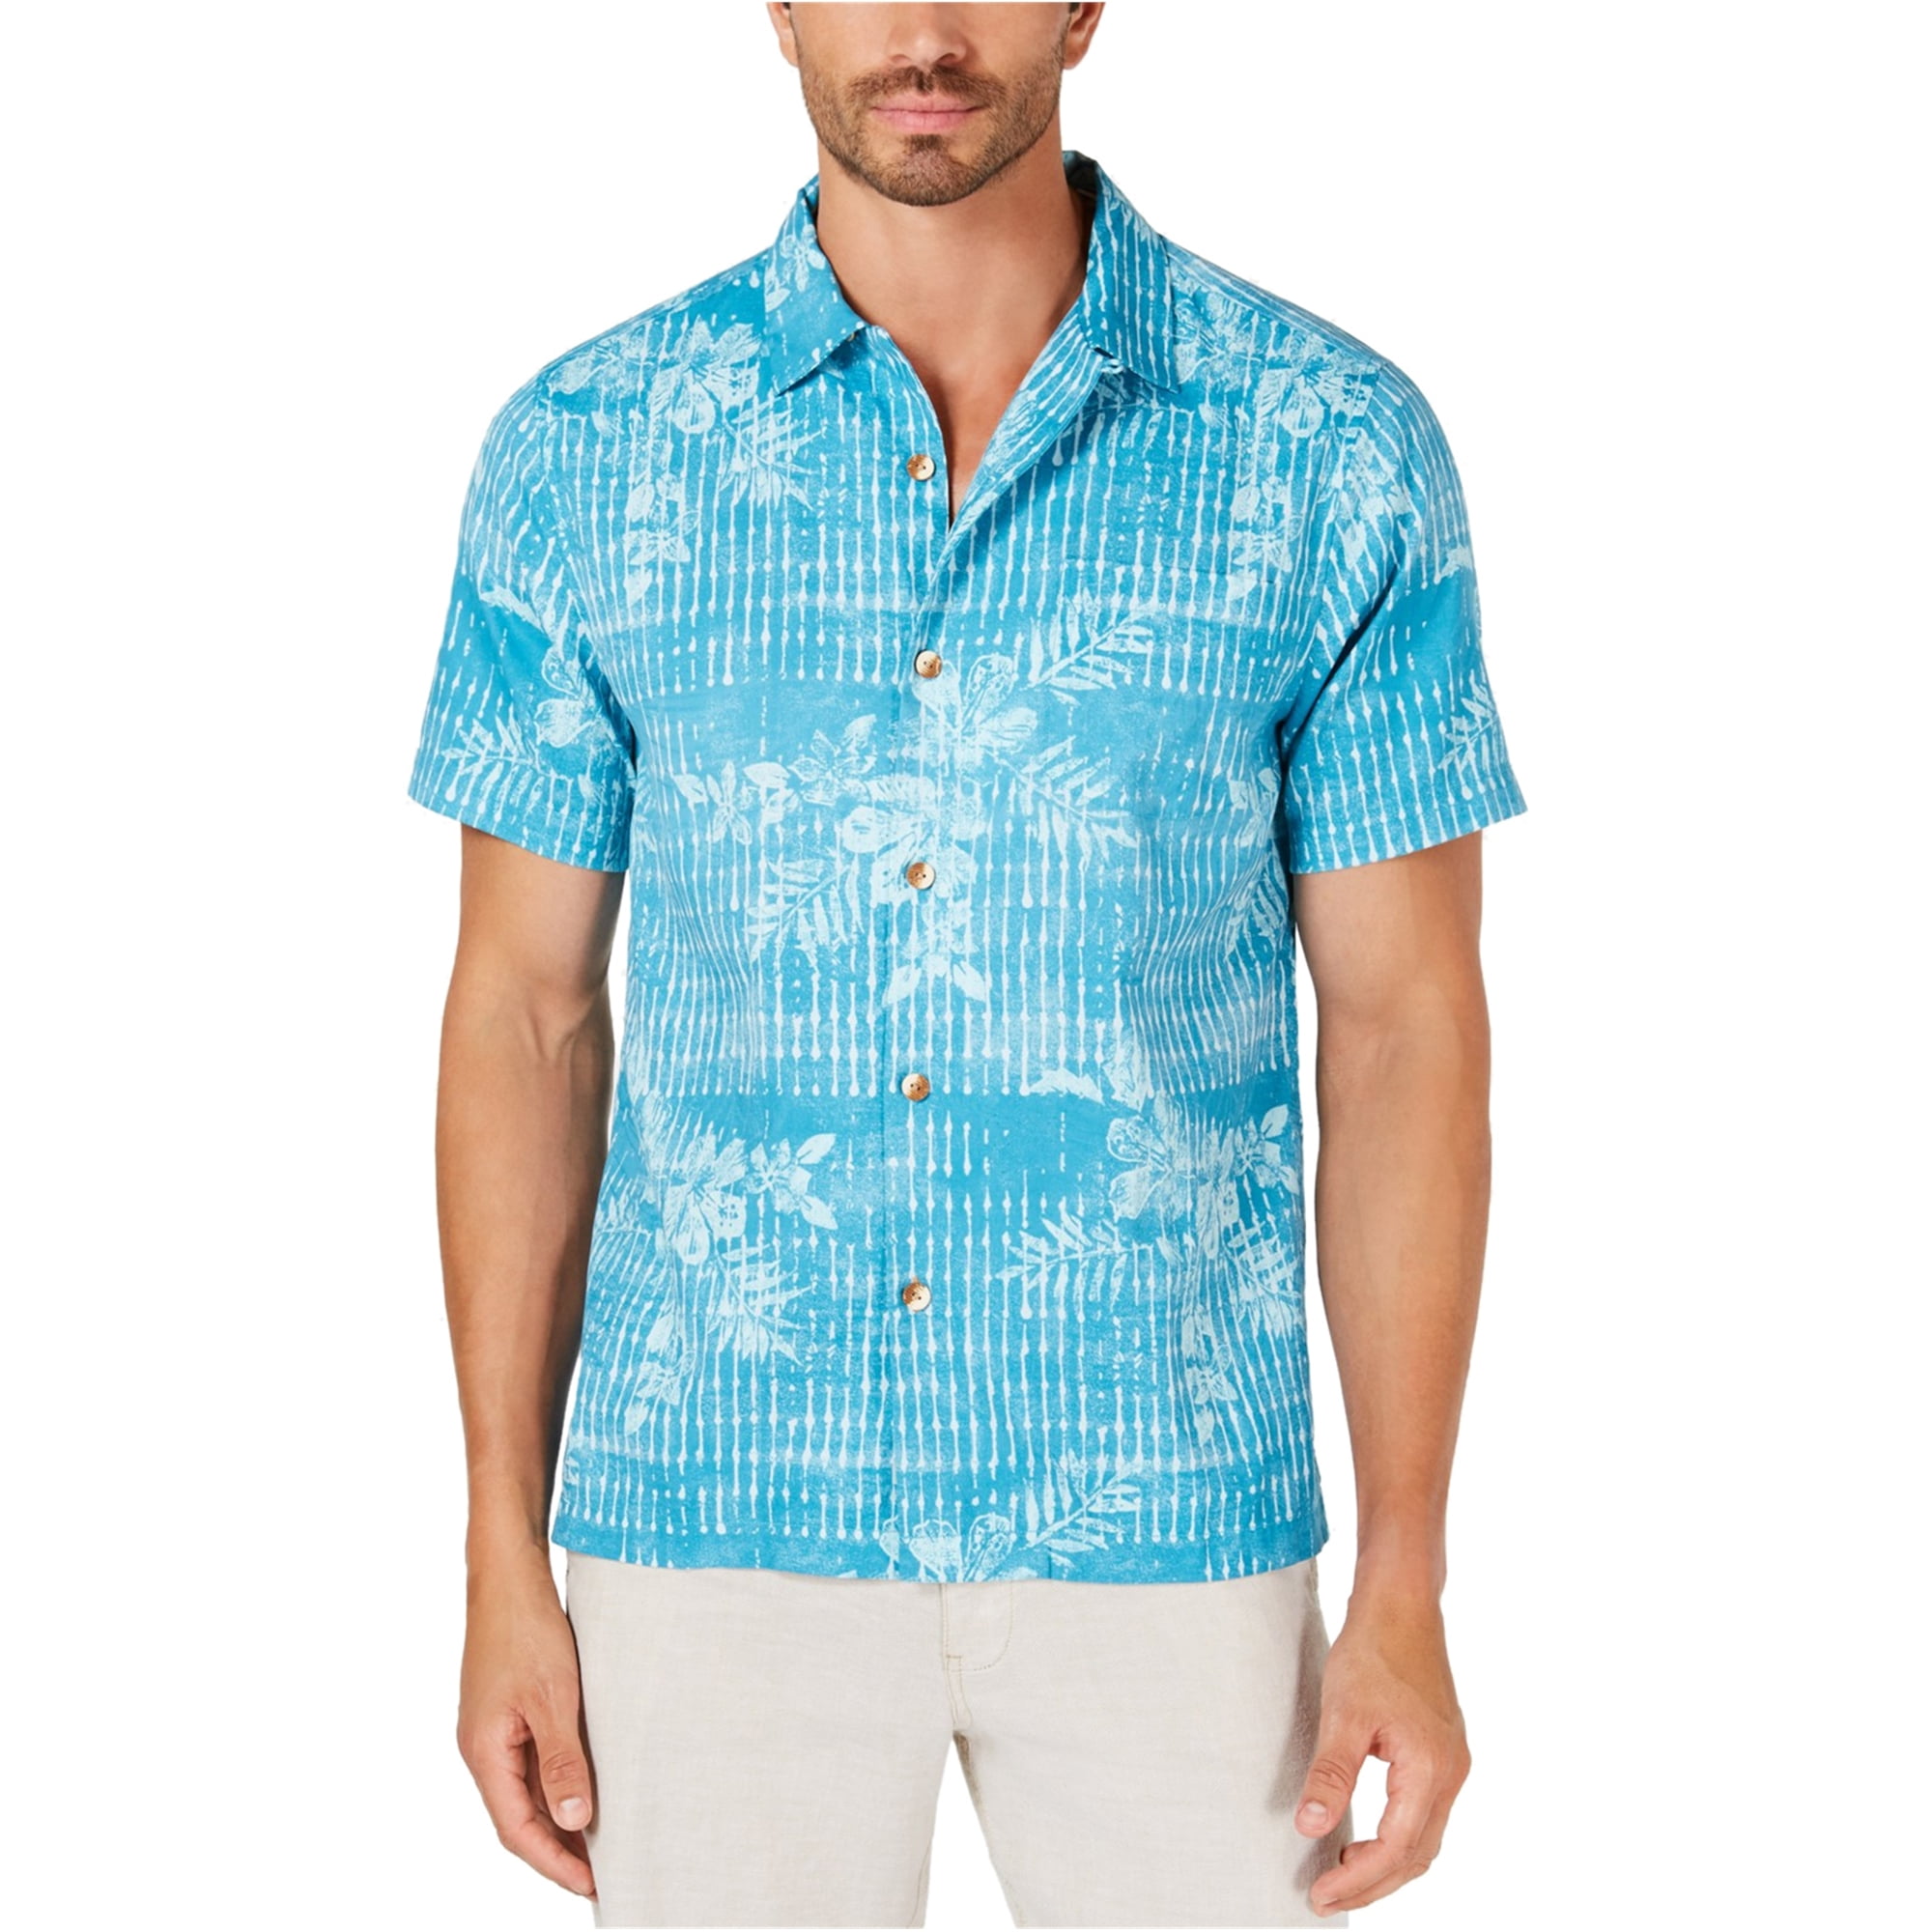 tommy bahama style shirts